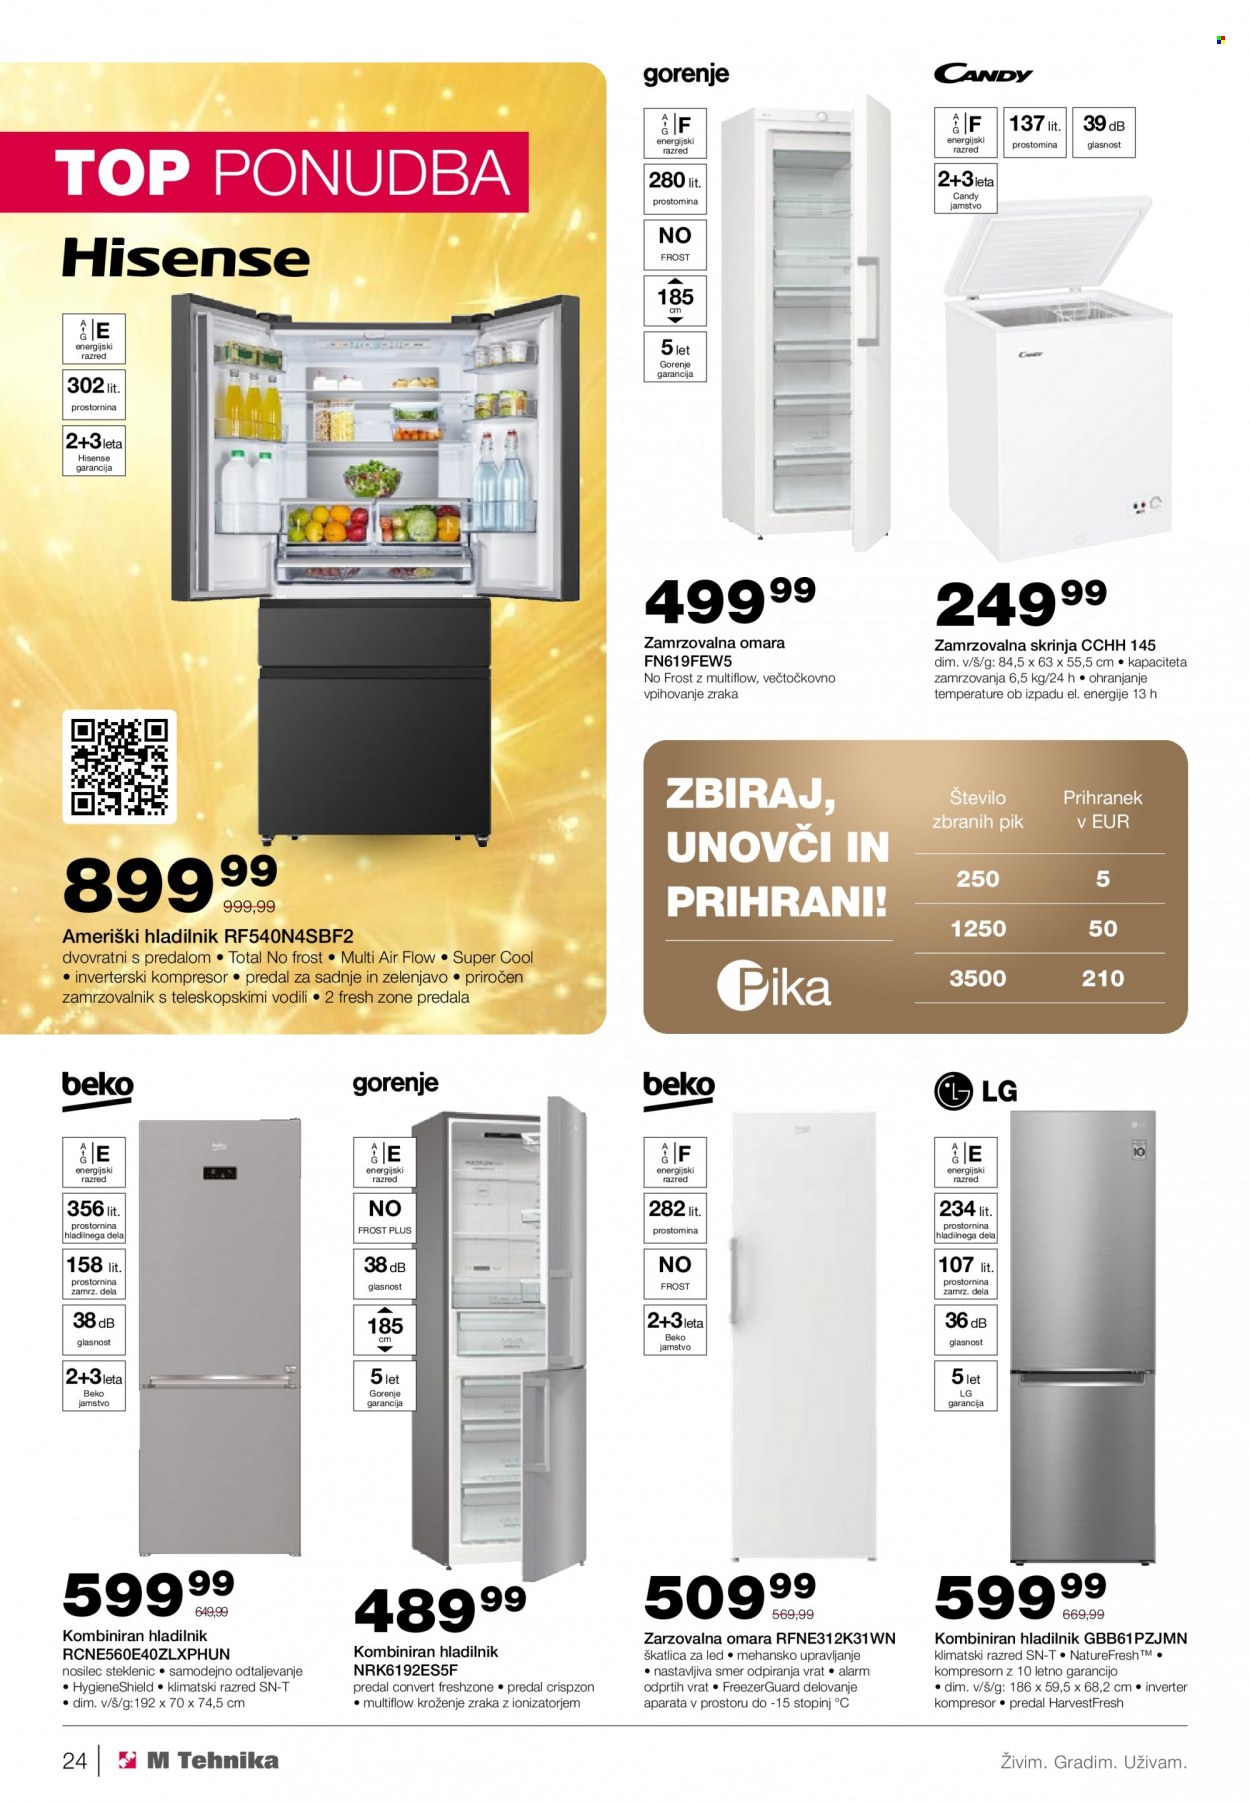 thumbnail - M Tehnika katalog - 1.12.2022 - 31.12.2022 - Ponudba izdelkov - LG, Hisense, Candy, ameriški hladilnik, Beko, Gorenje, zamrzovalna omara, zamrzovalna skrinja, hladilnik, kompresor. Stran 24.